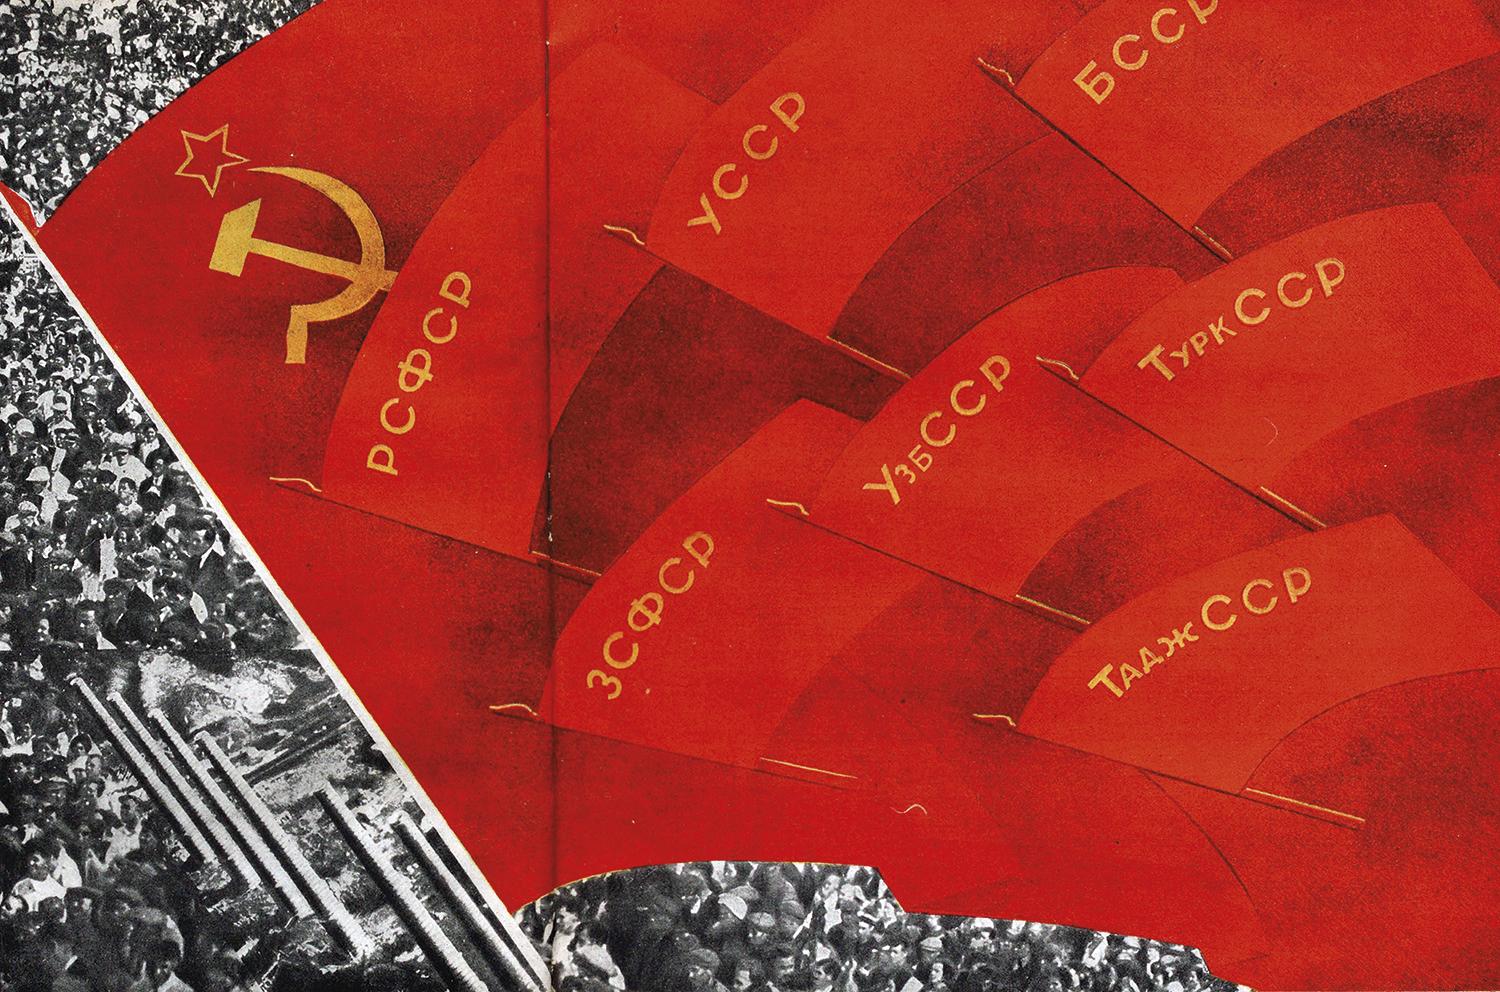 Zväz sovietskych socialistických republík buduje socializmus. Marxisticko-leninská „dialektická“ transformácia idey svätej Rusi ako univerzálnej ríše budúcnosti, ktorá nekončí.